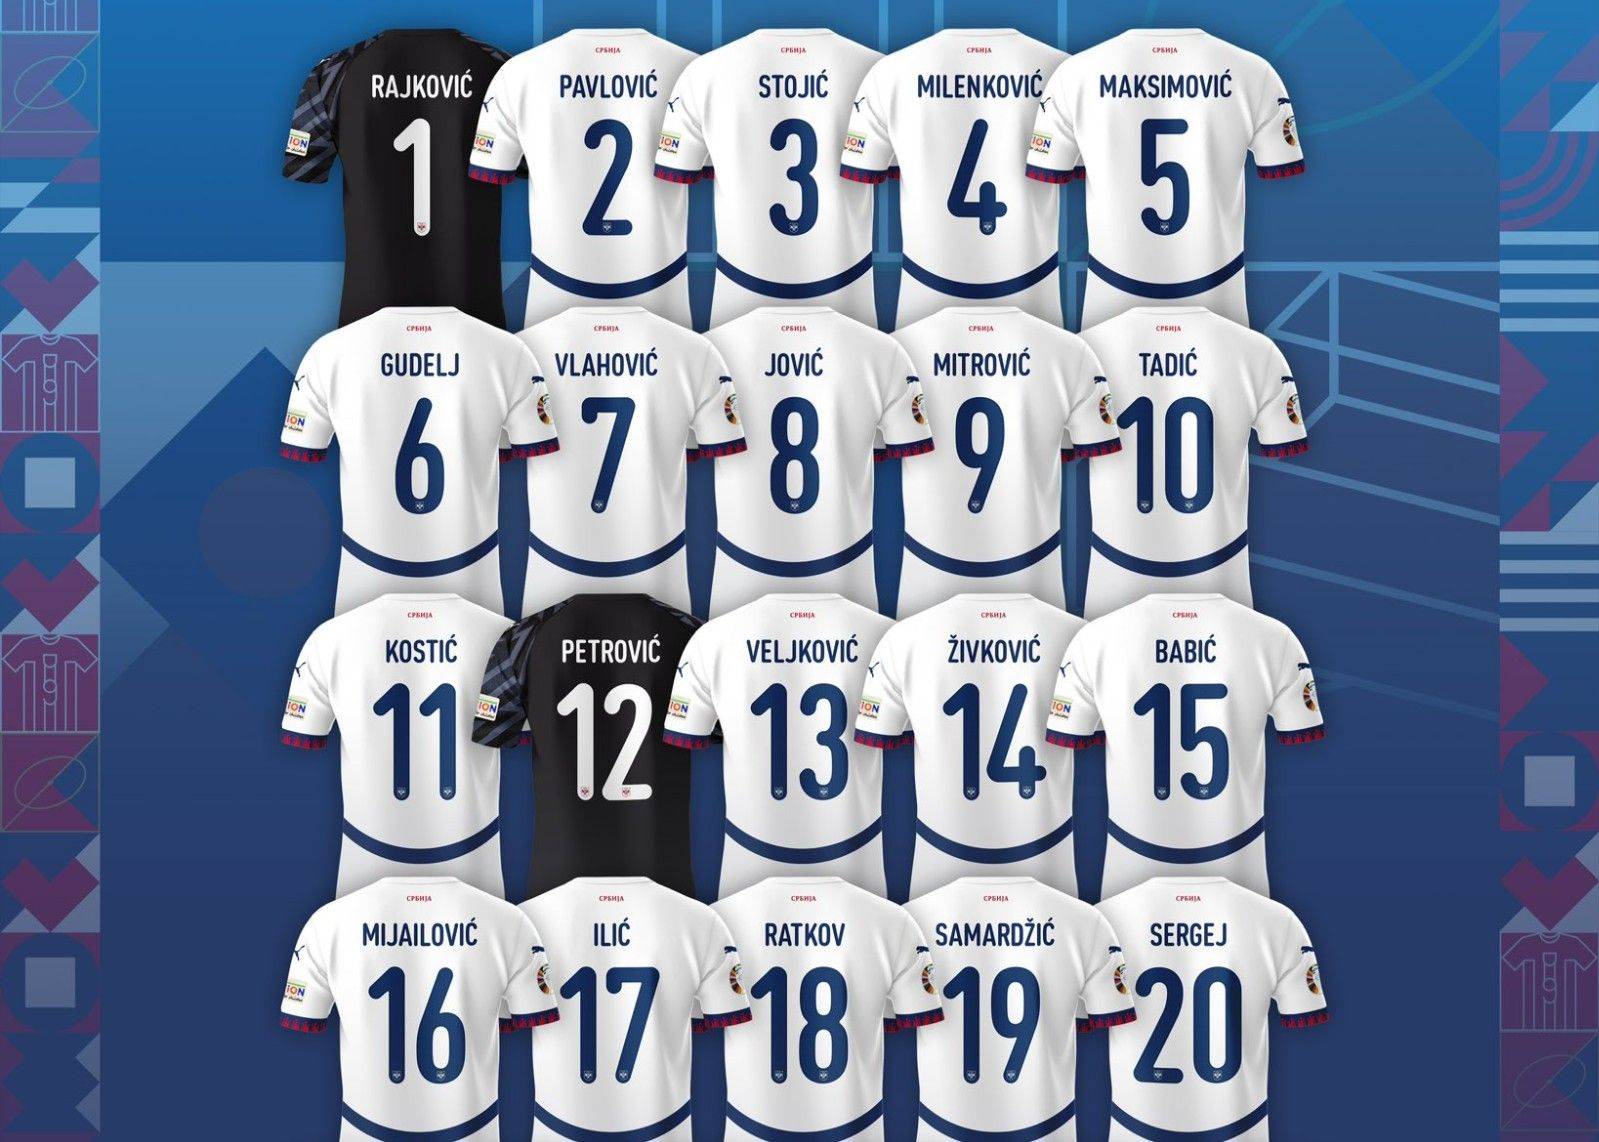 塞尔维亚公布欧洲杯球衣号码：弗拉霍维奇7号 米神9号 塔迪奇10号